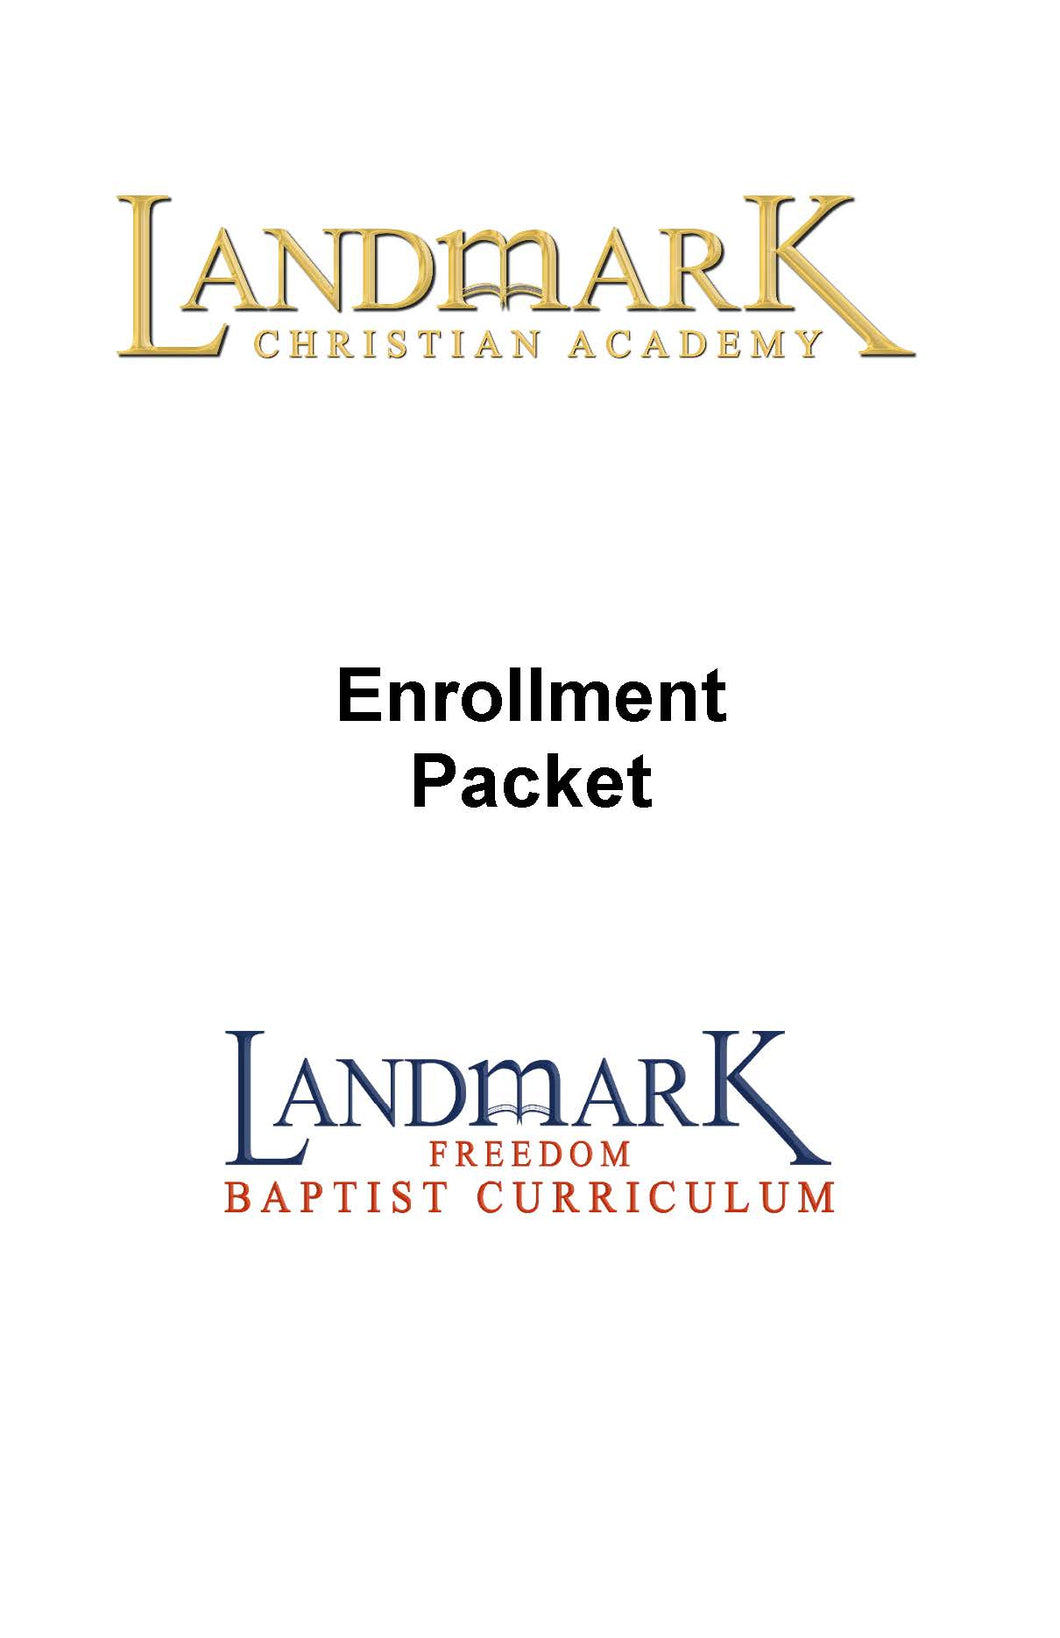 Academy Enrollment Packet